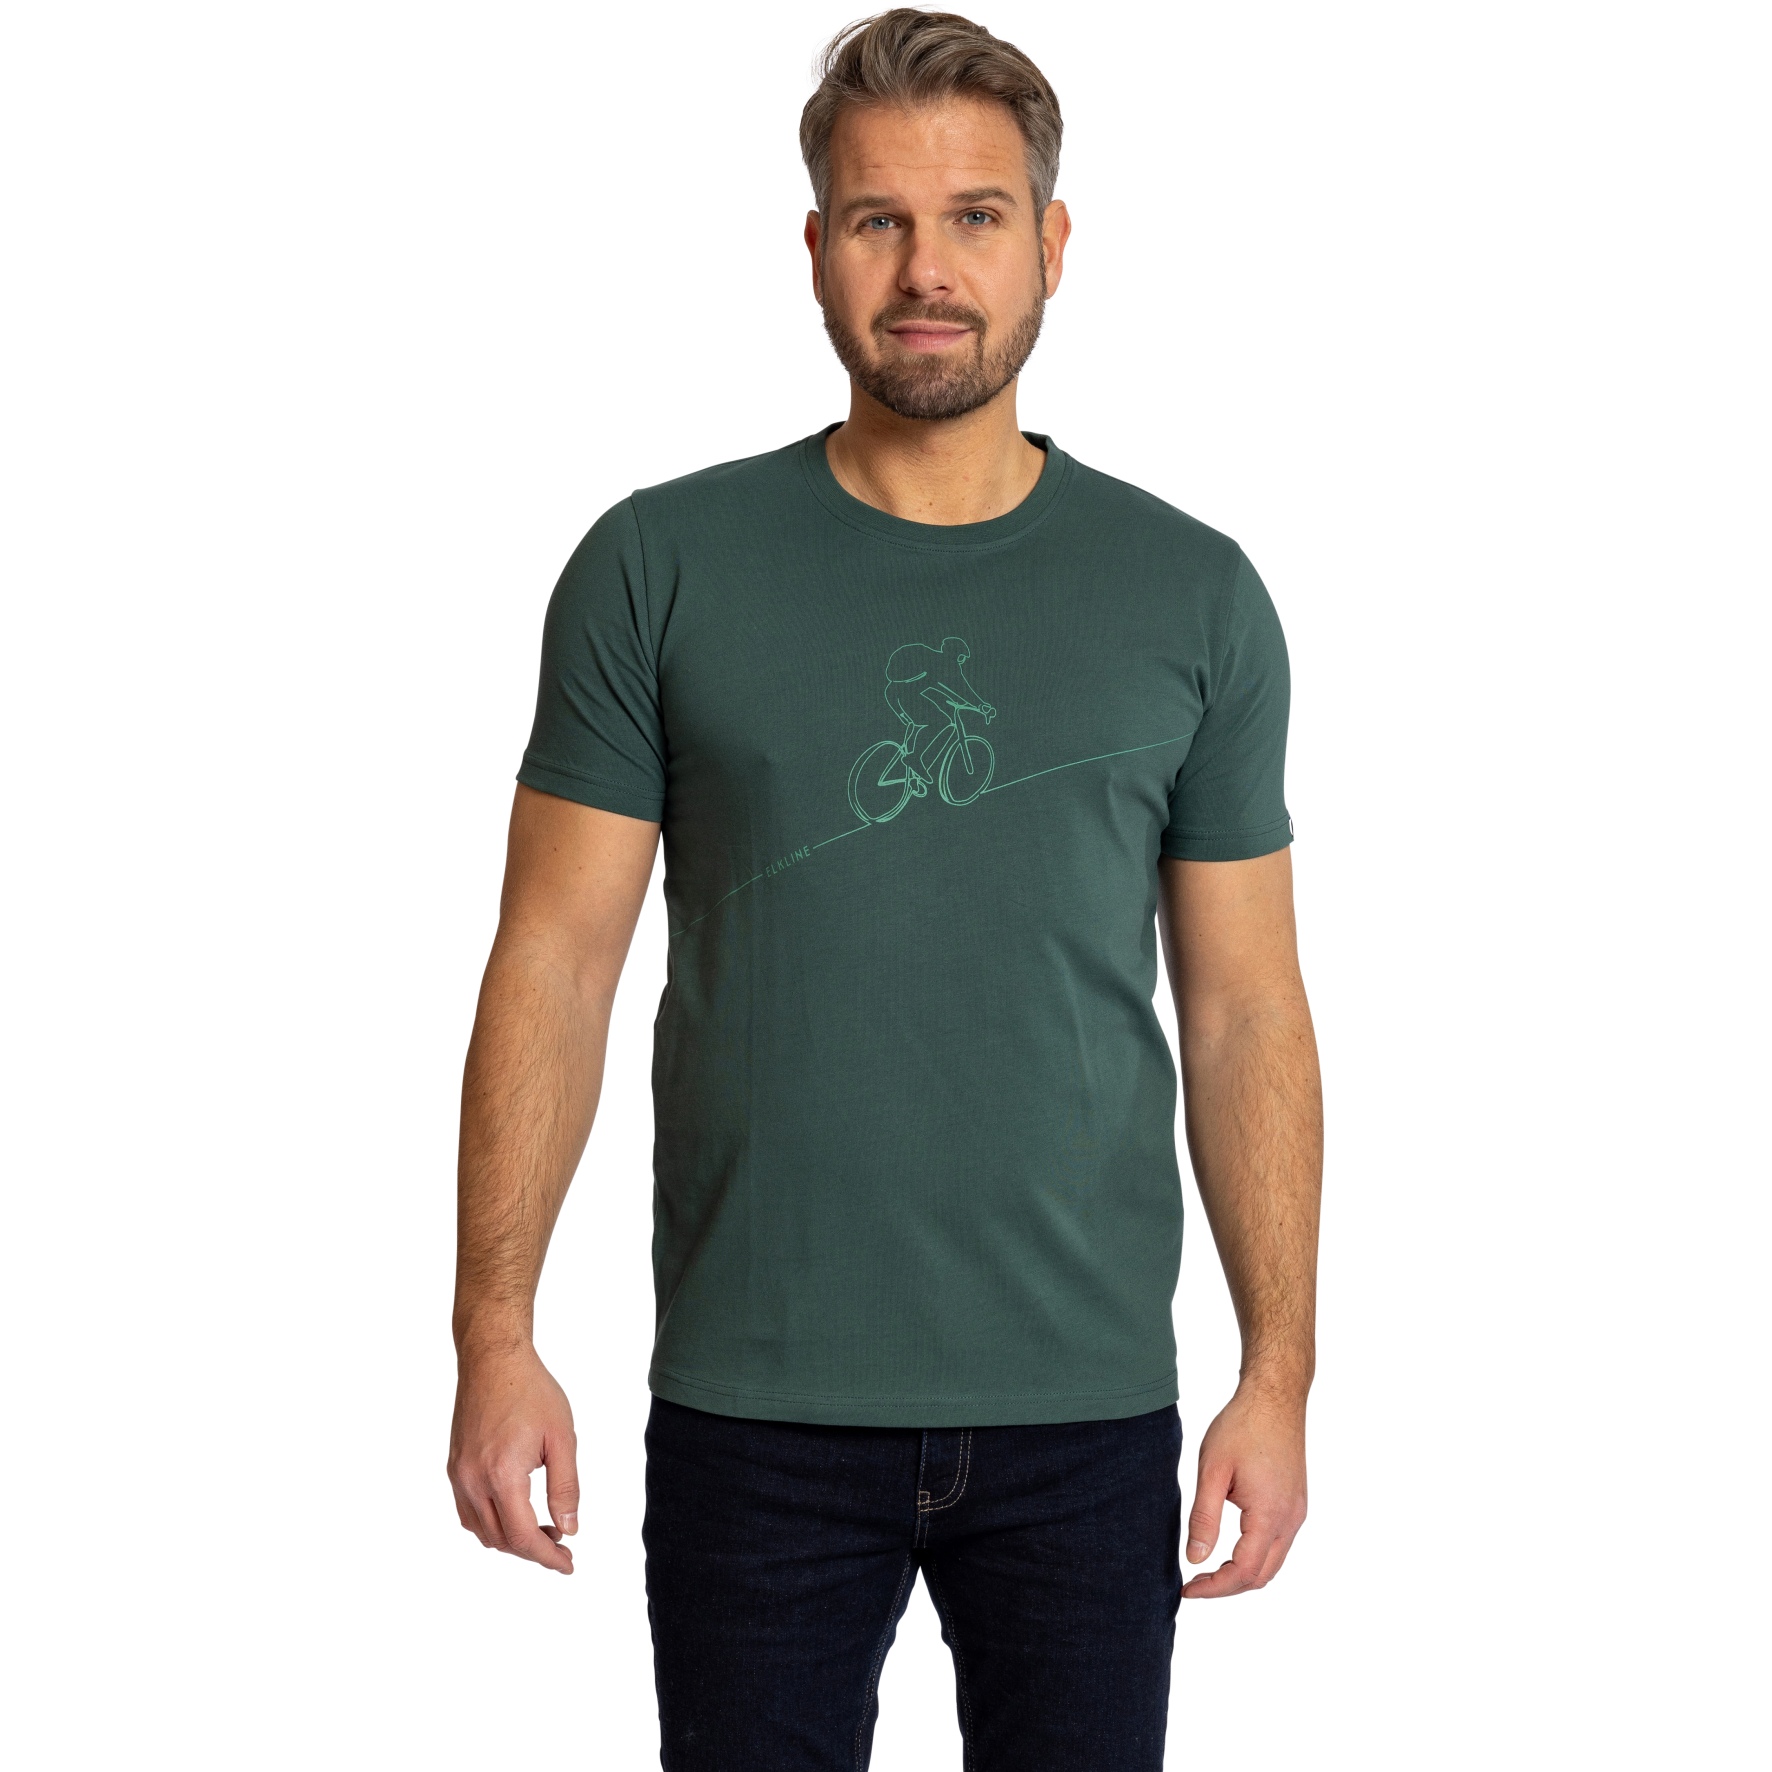 Produktbild von Elkline DOWNHILL T-Shirt Herren - trekking green